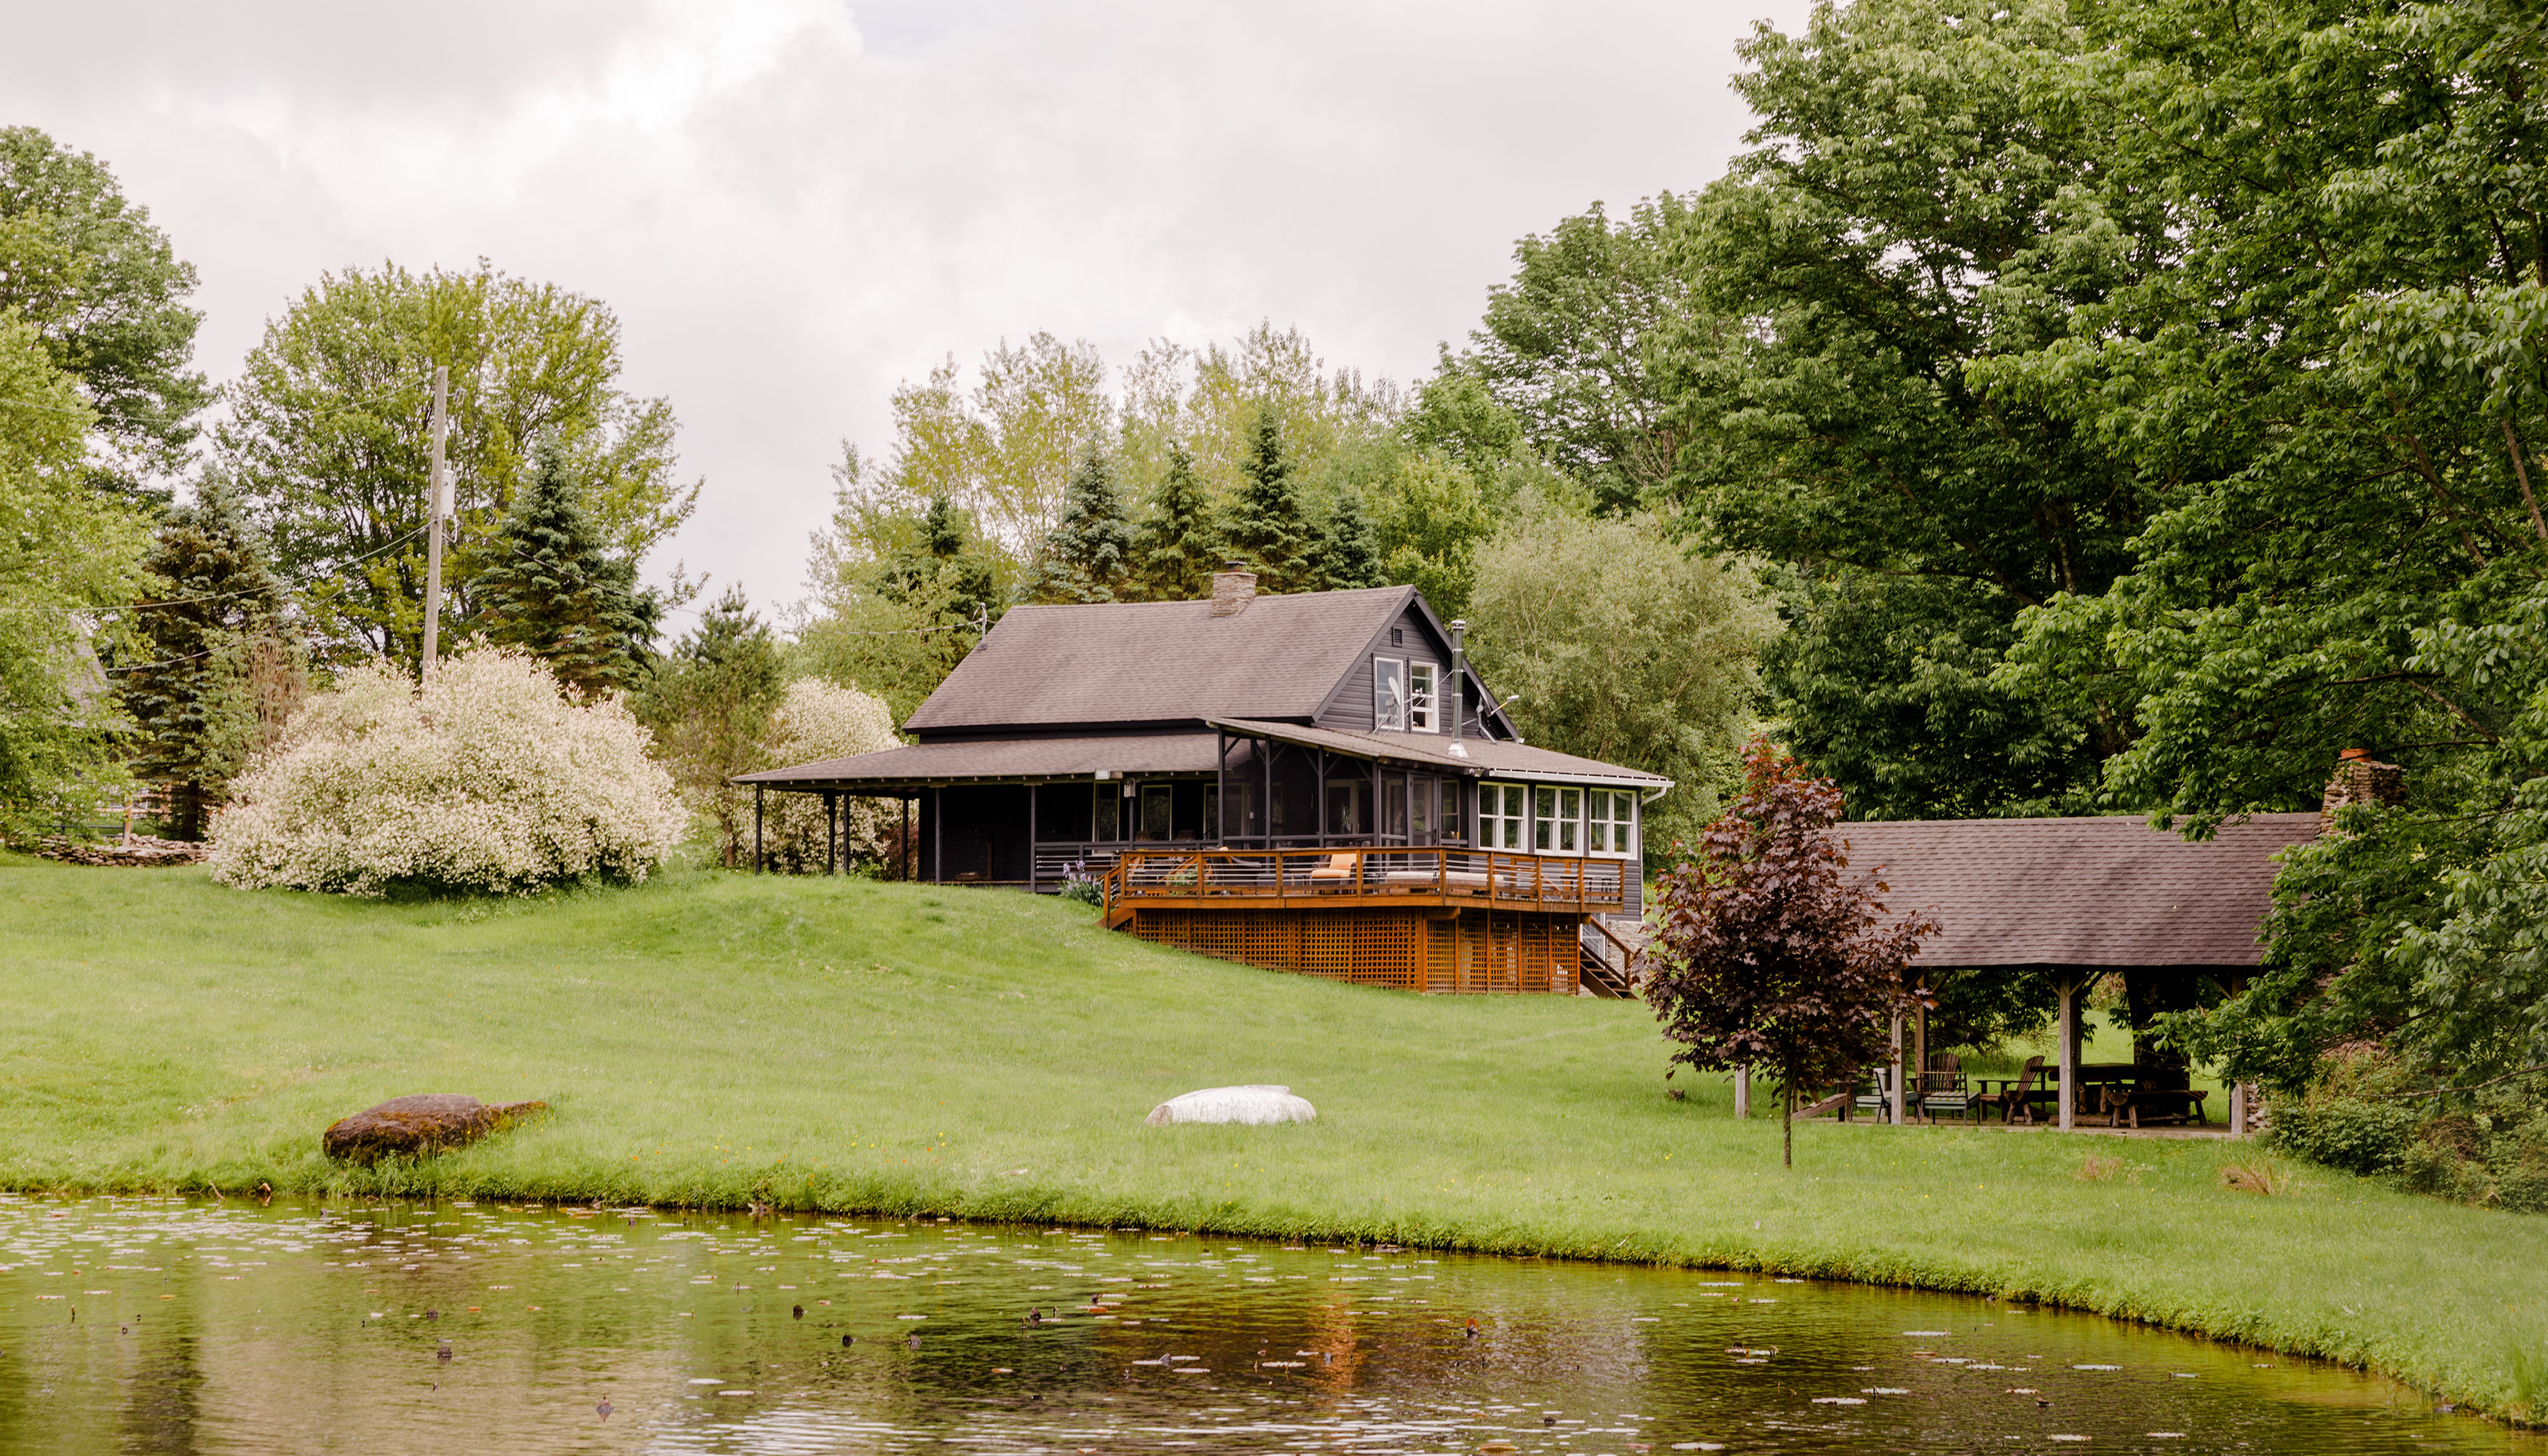 克莱尔·马林的房子被绿树成荫的院子和池塘包围